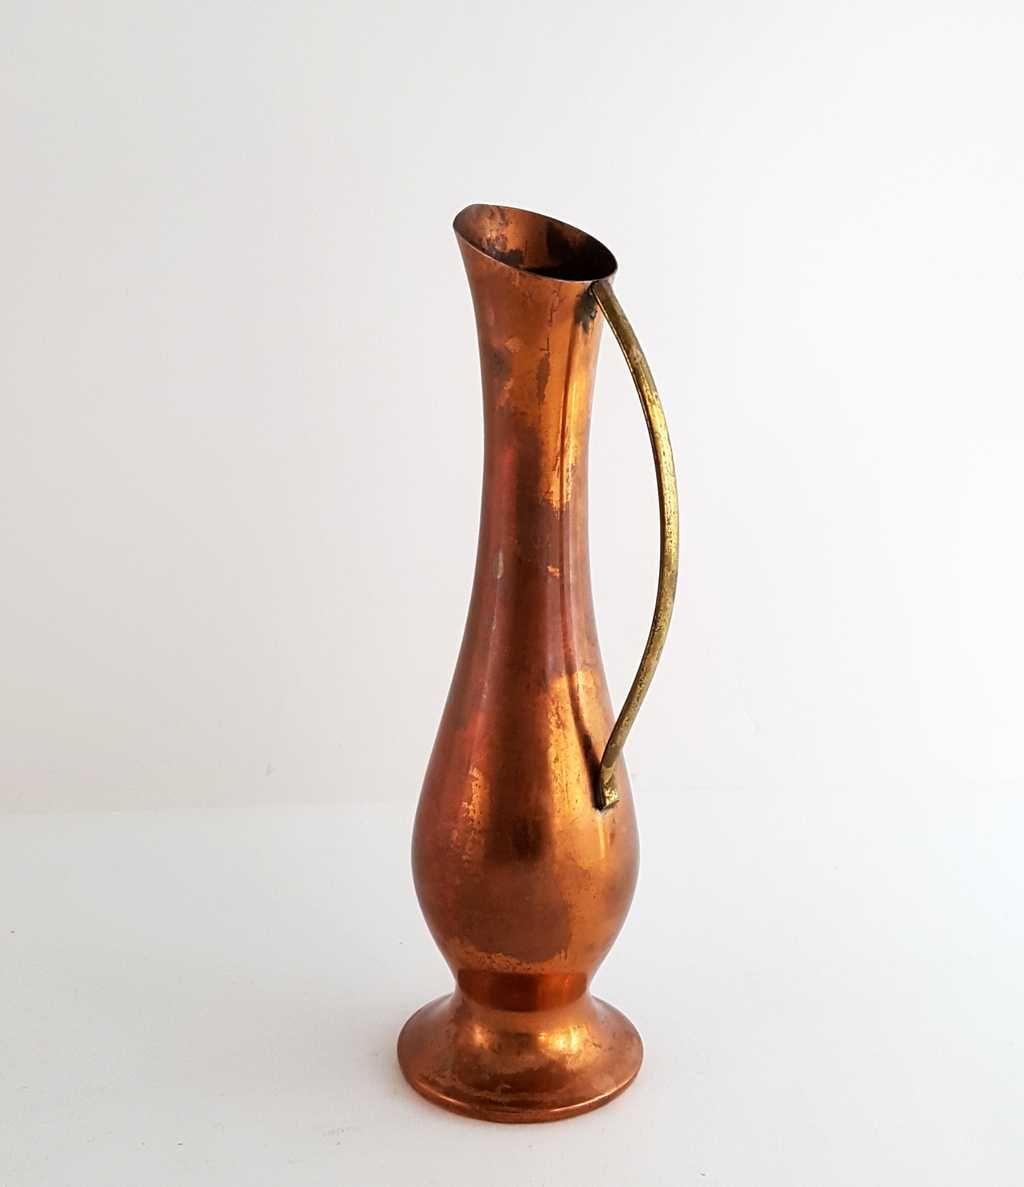 Miedziany dzbanek - wazon z I połowy XX wieku, wys. 21 cm